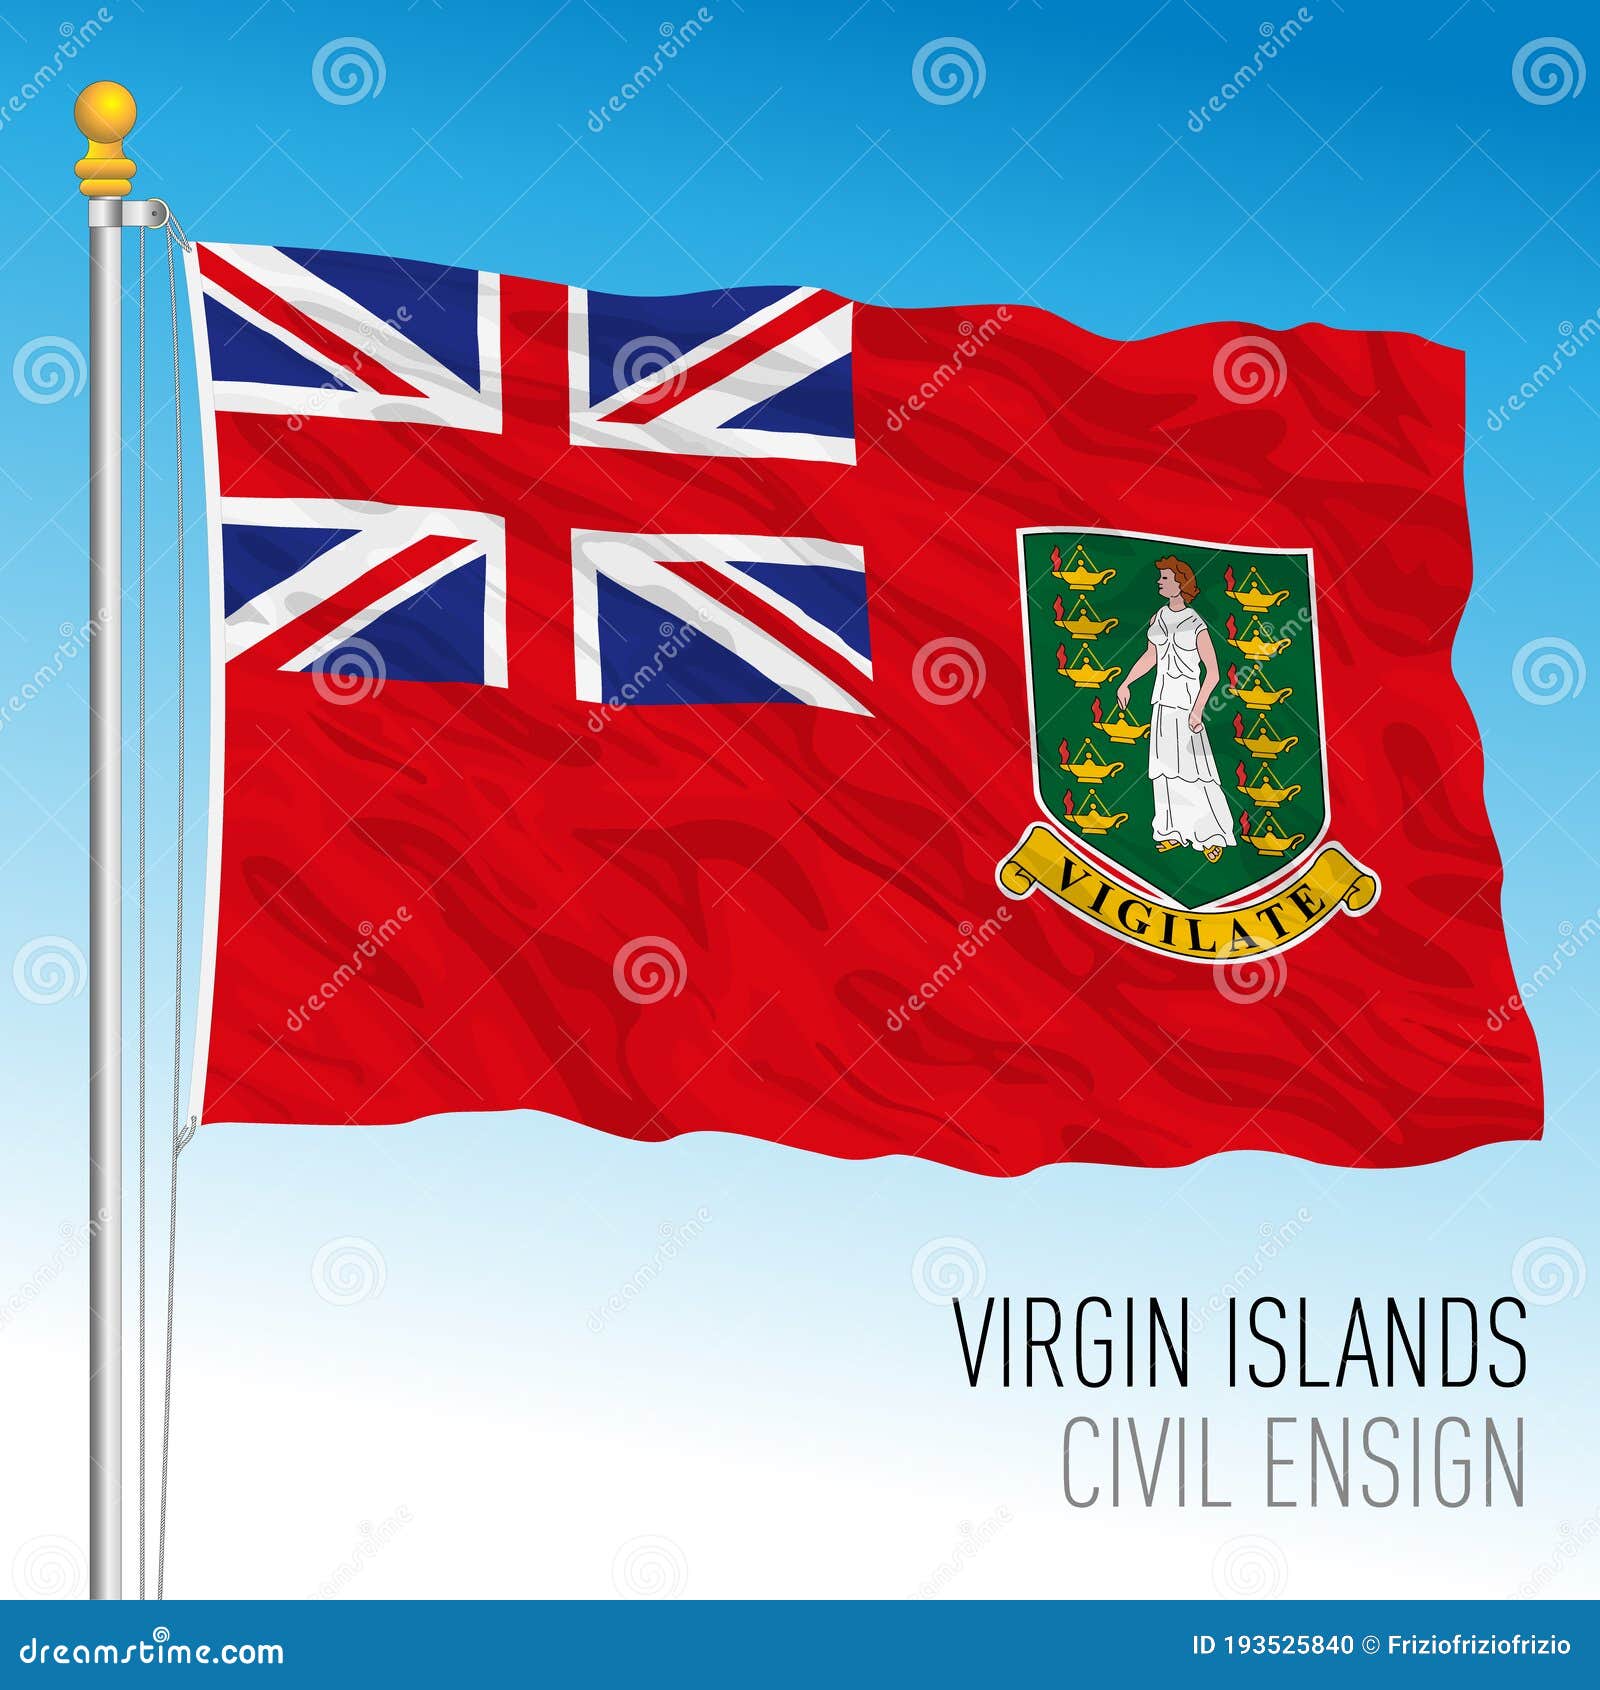 Lá cờ dân sự Quần đảo Virgin thuộc Anh rất đặc biệt và đẹp mắt. Hãy xem căn bản của lá cờ này trên hình ảnh liên quan để hiểu thêm về lịch sử và văn hóa của Quần đảo Virgin.